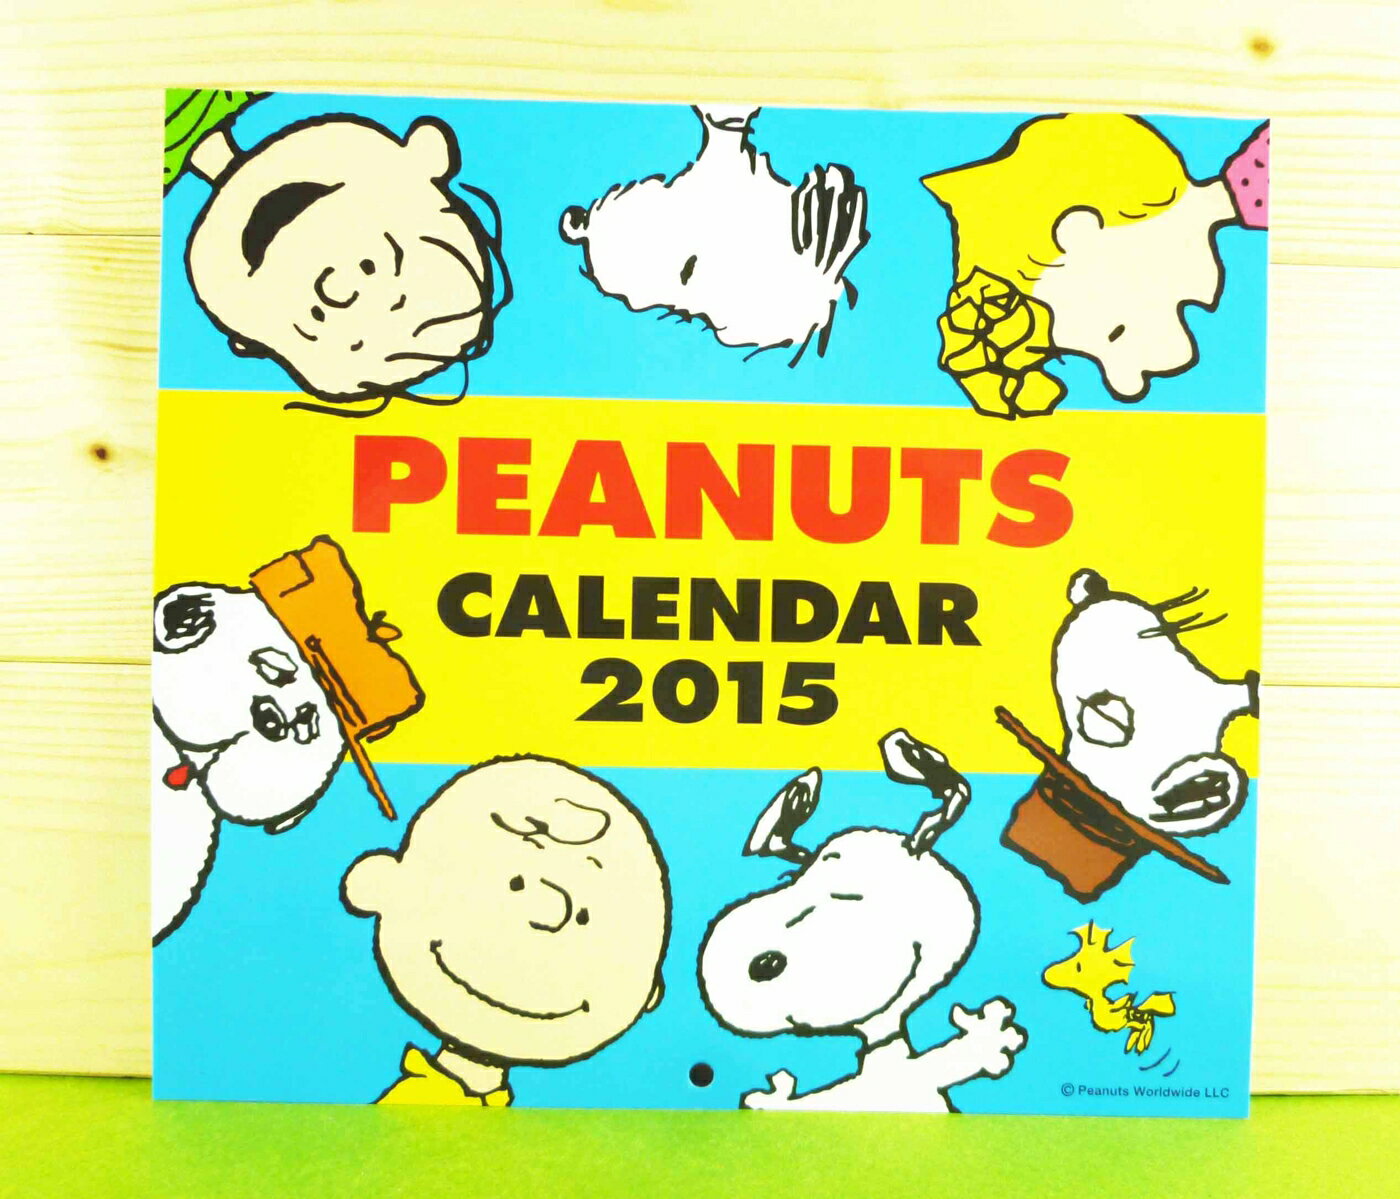 【震撼精品百貨】史奴比Peanuts Snoopy 卡片-史努比家族/SHOW 震撼日式精品百貨